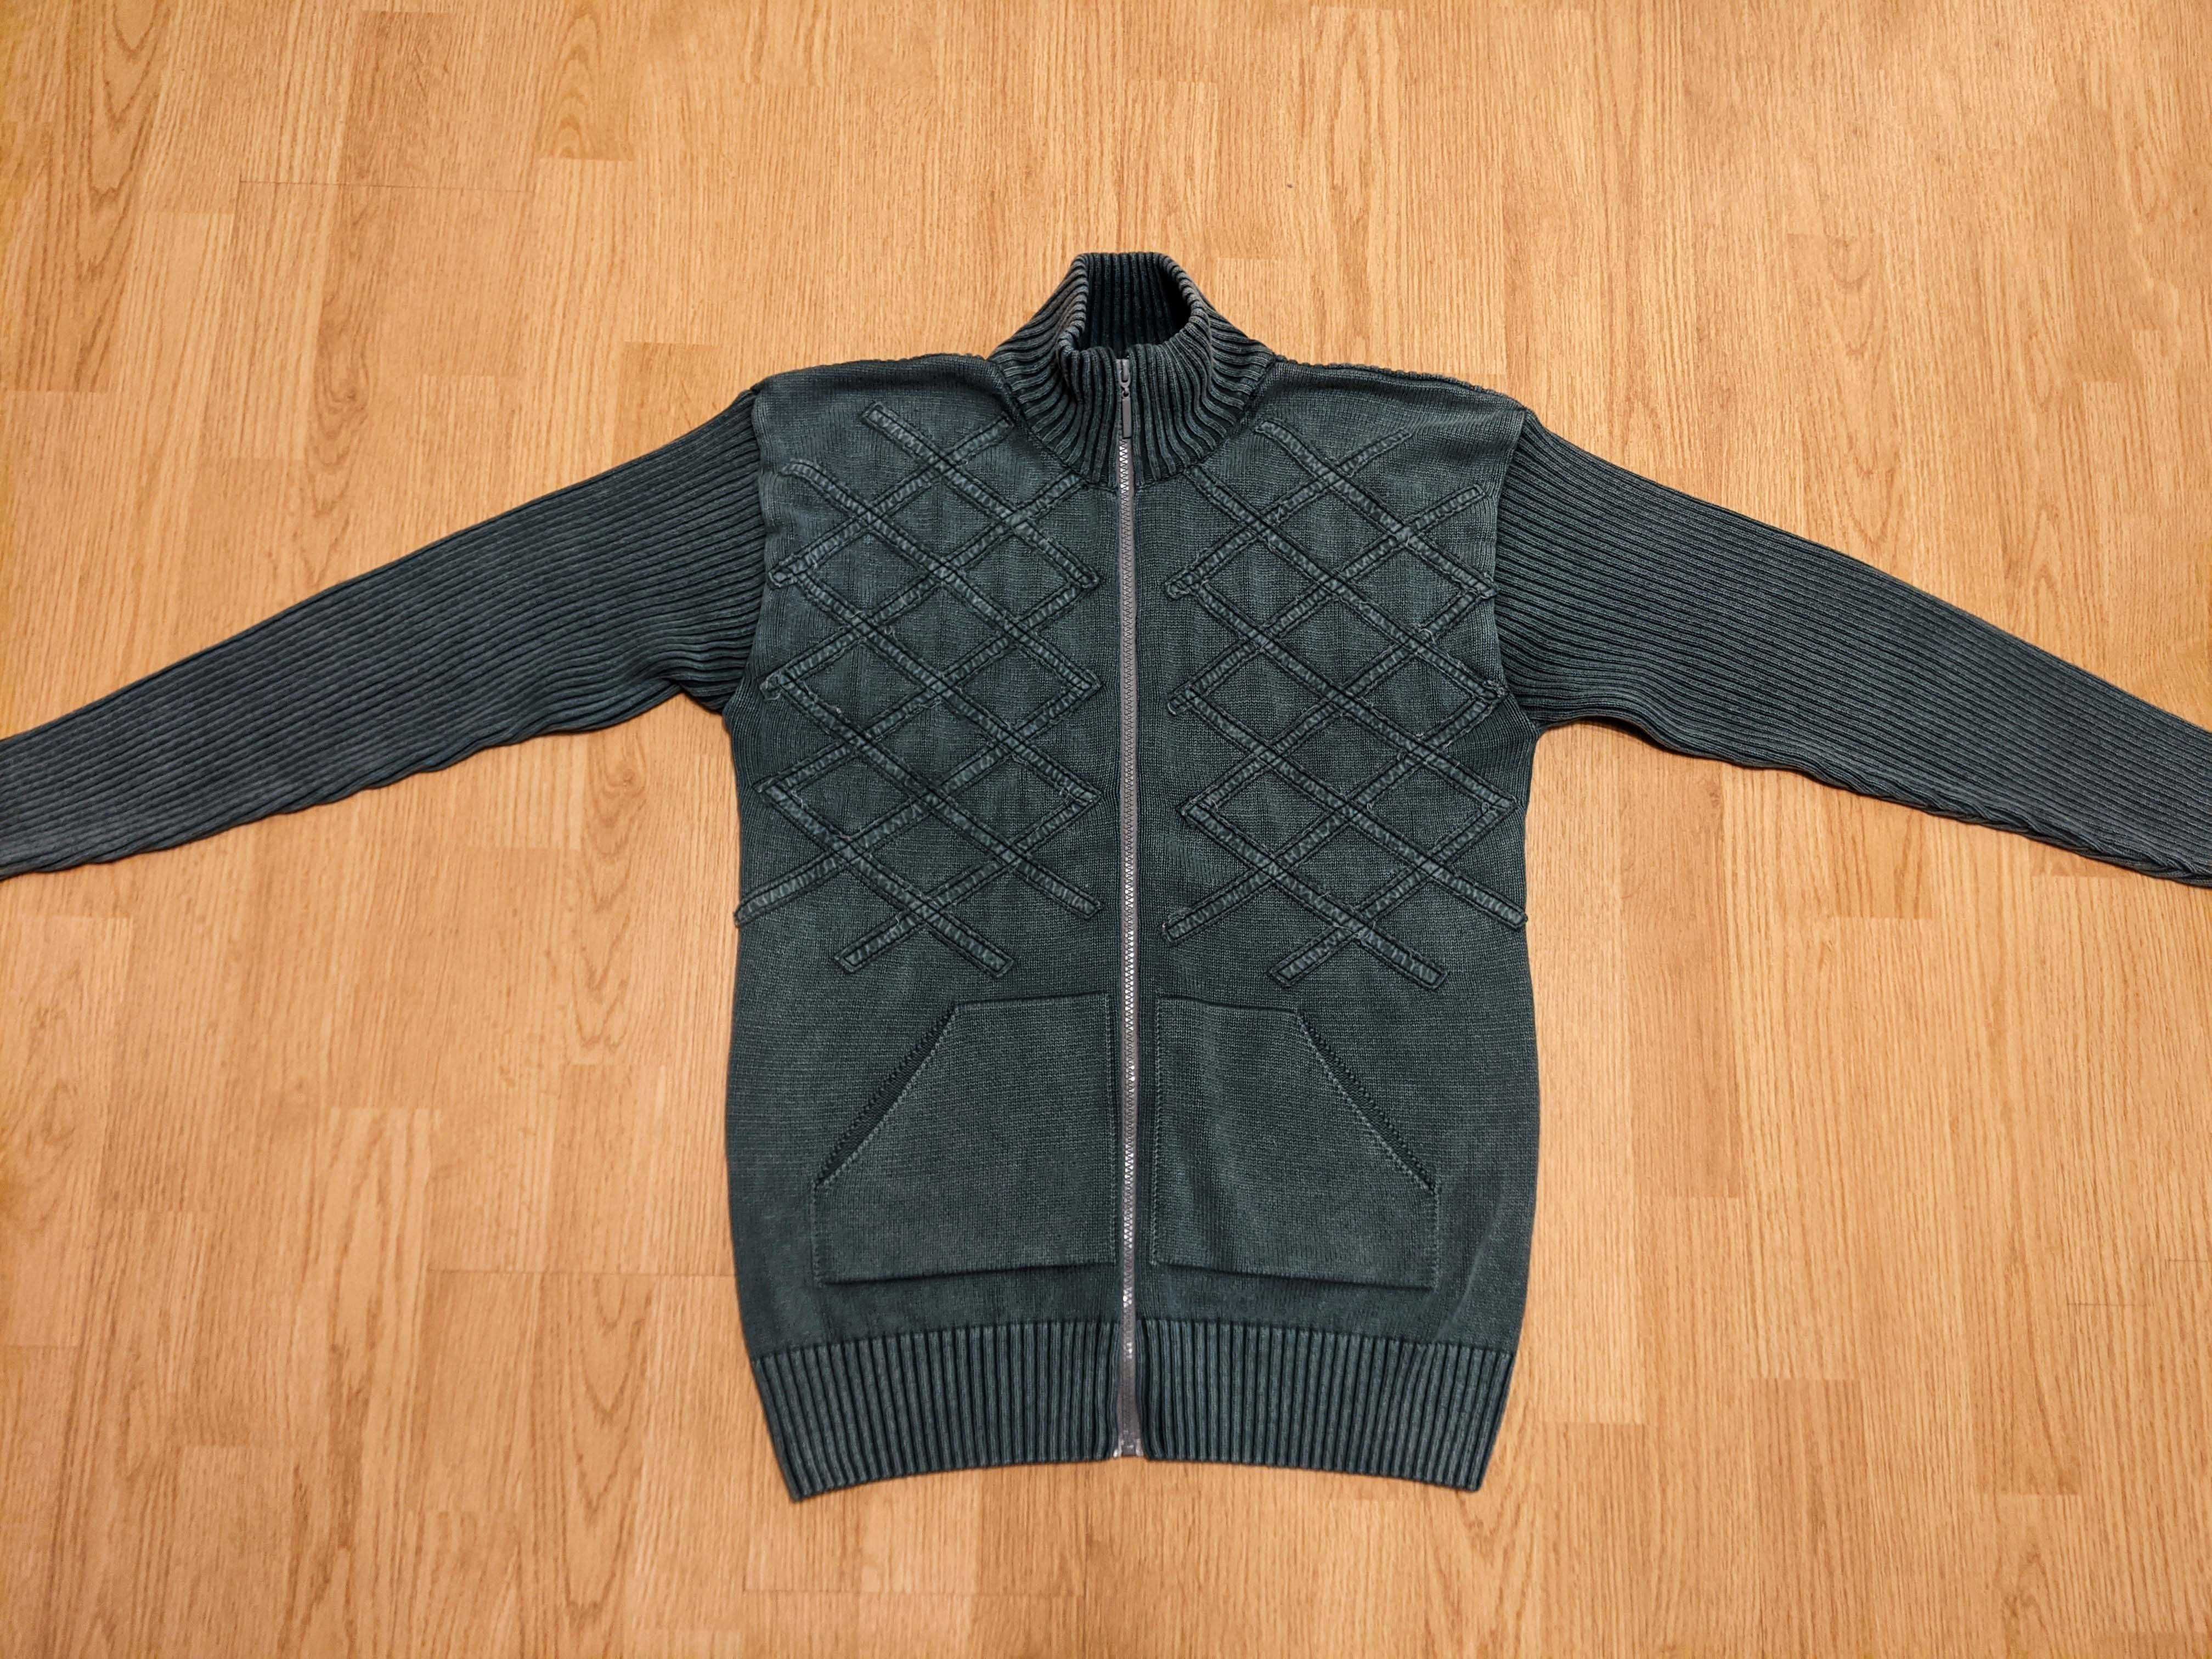 НОВ Мъжки Пуловер Блуза Суичър - 10 БРОЯ за 59лв маркови дрехи